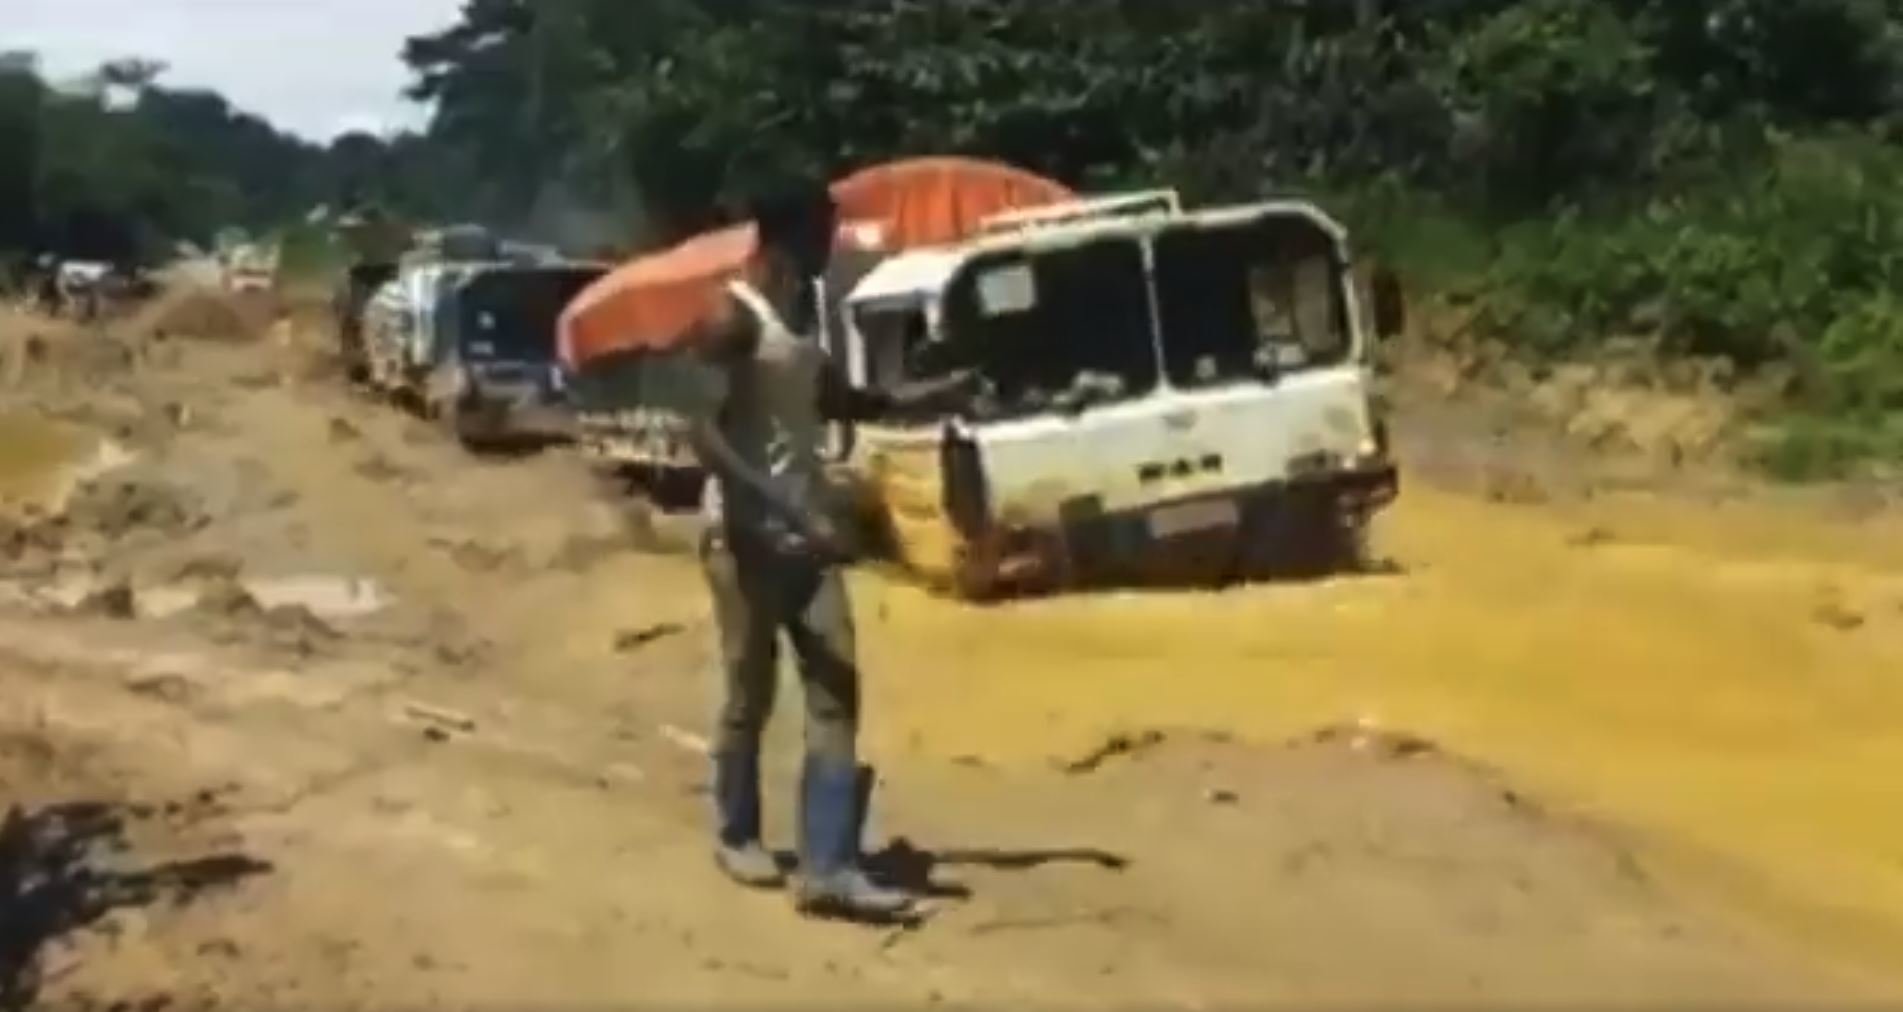 Náklaďáky MAN KAT1 si probíjí cestu džunglí Demokratické republiky Kongo